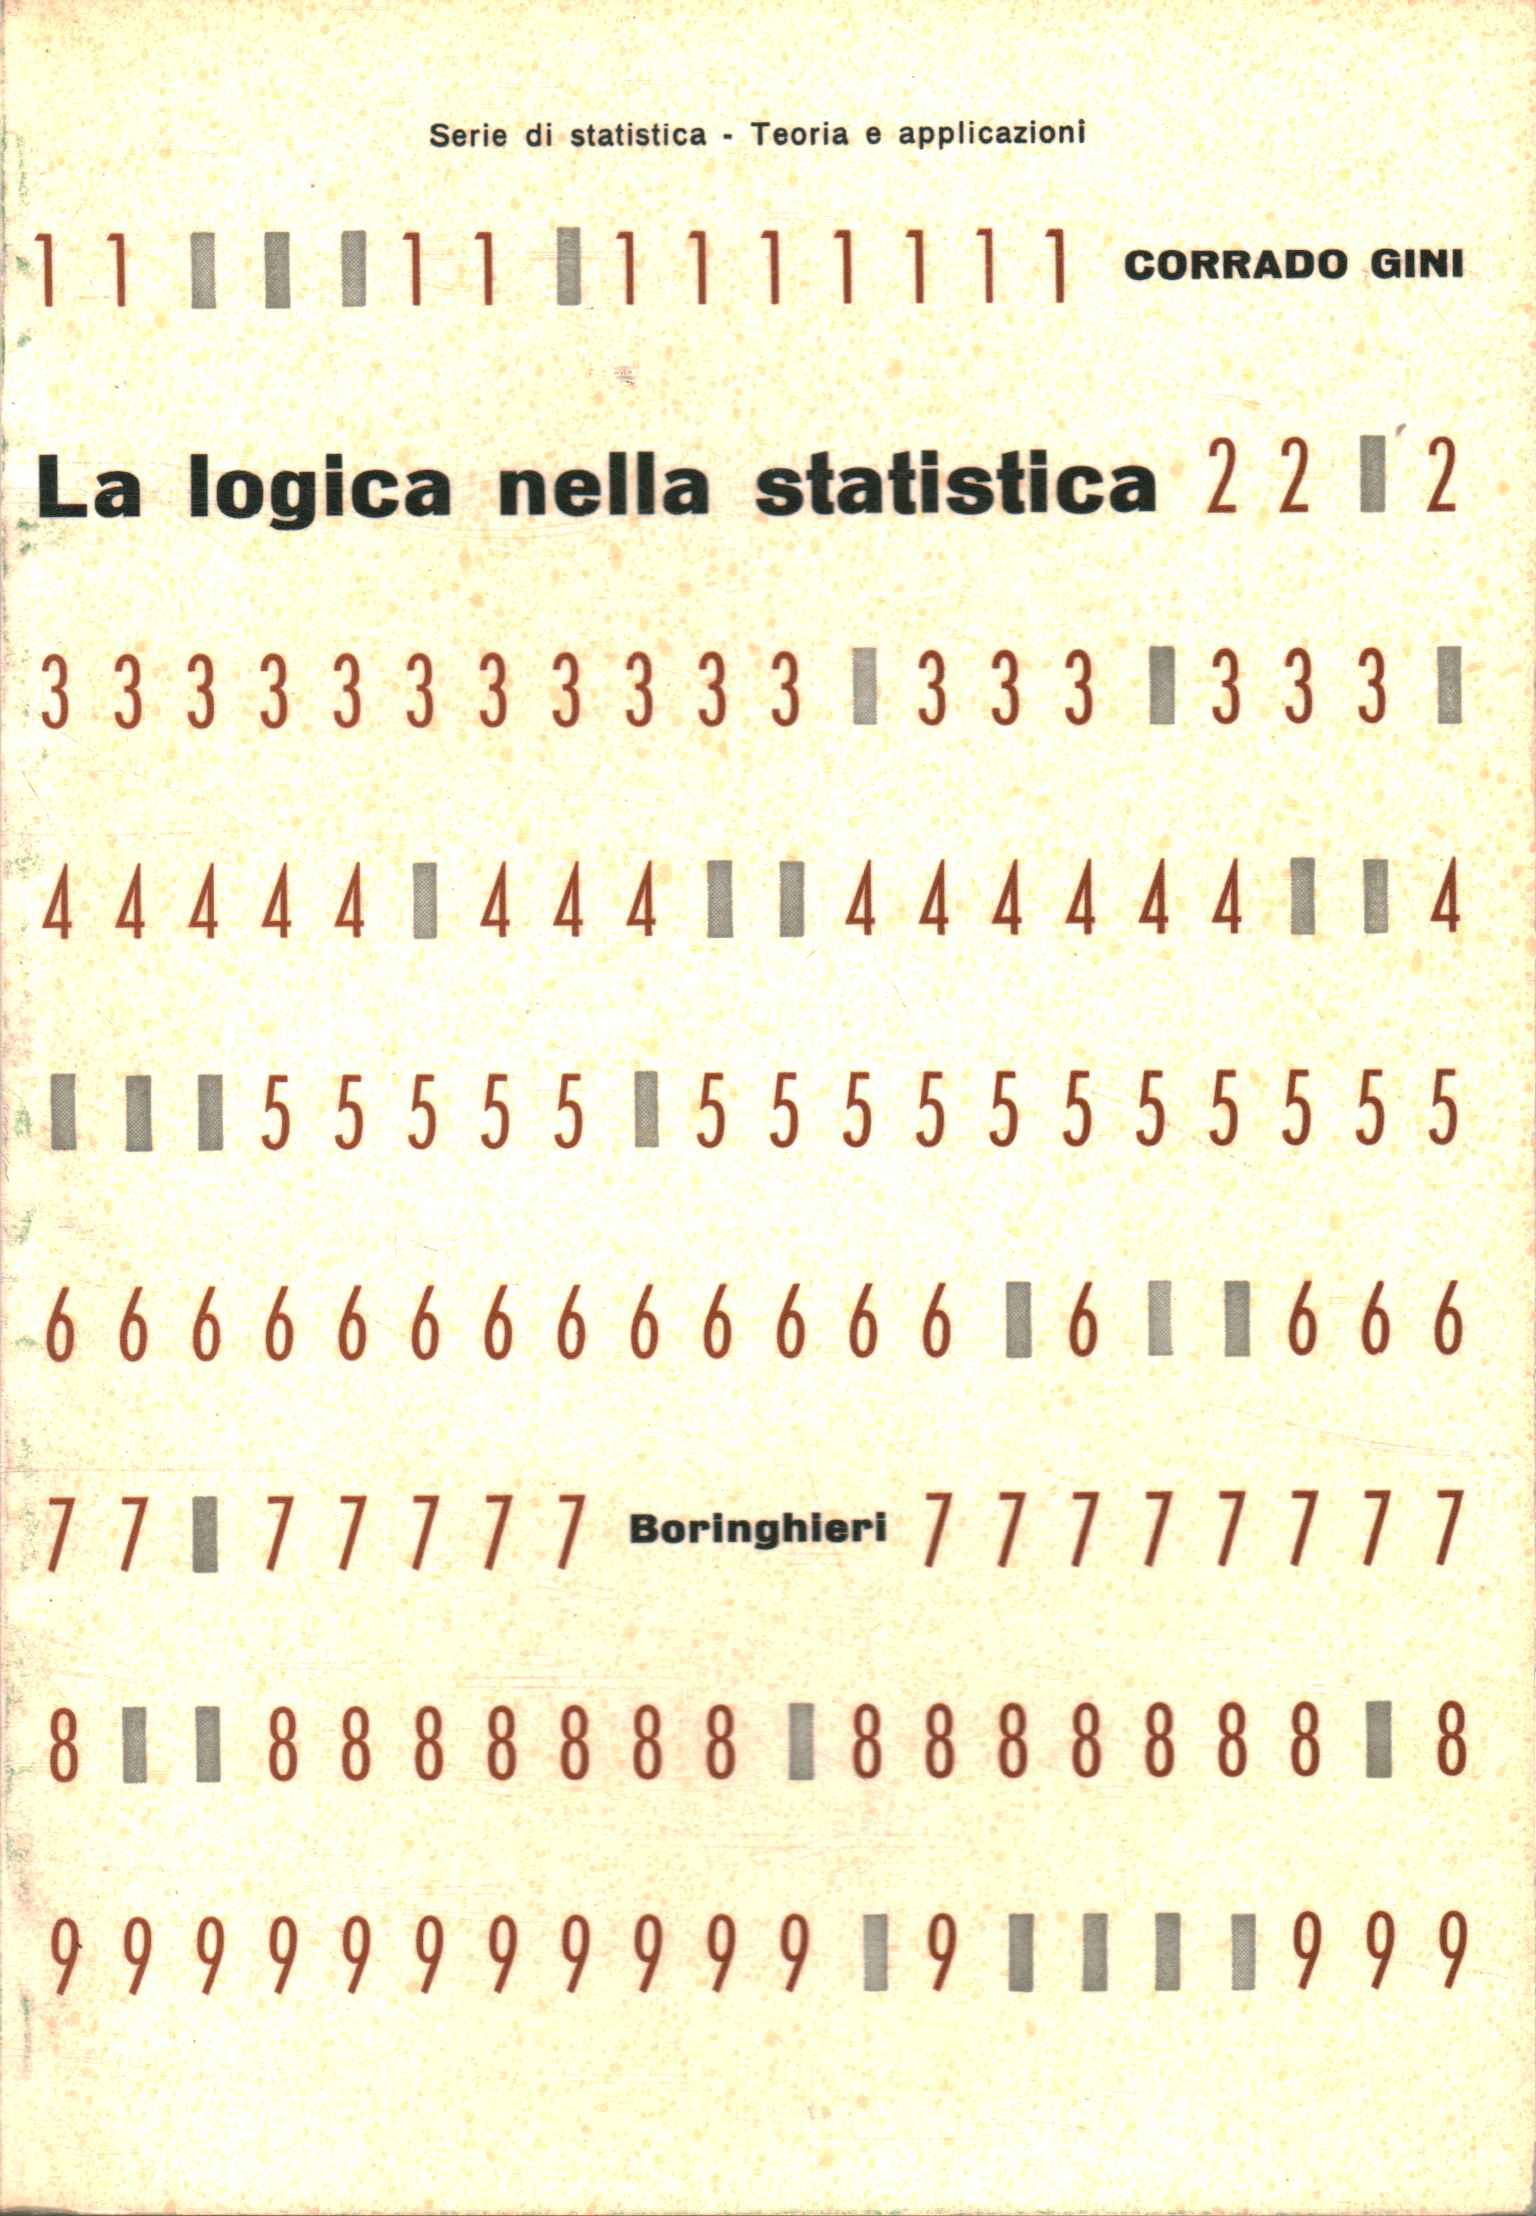 Logic in statistics